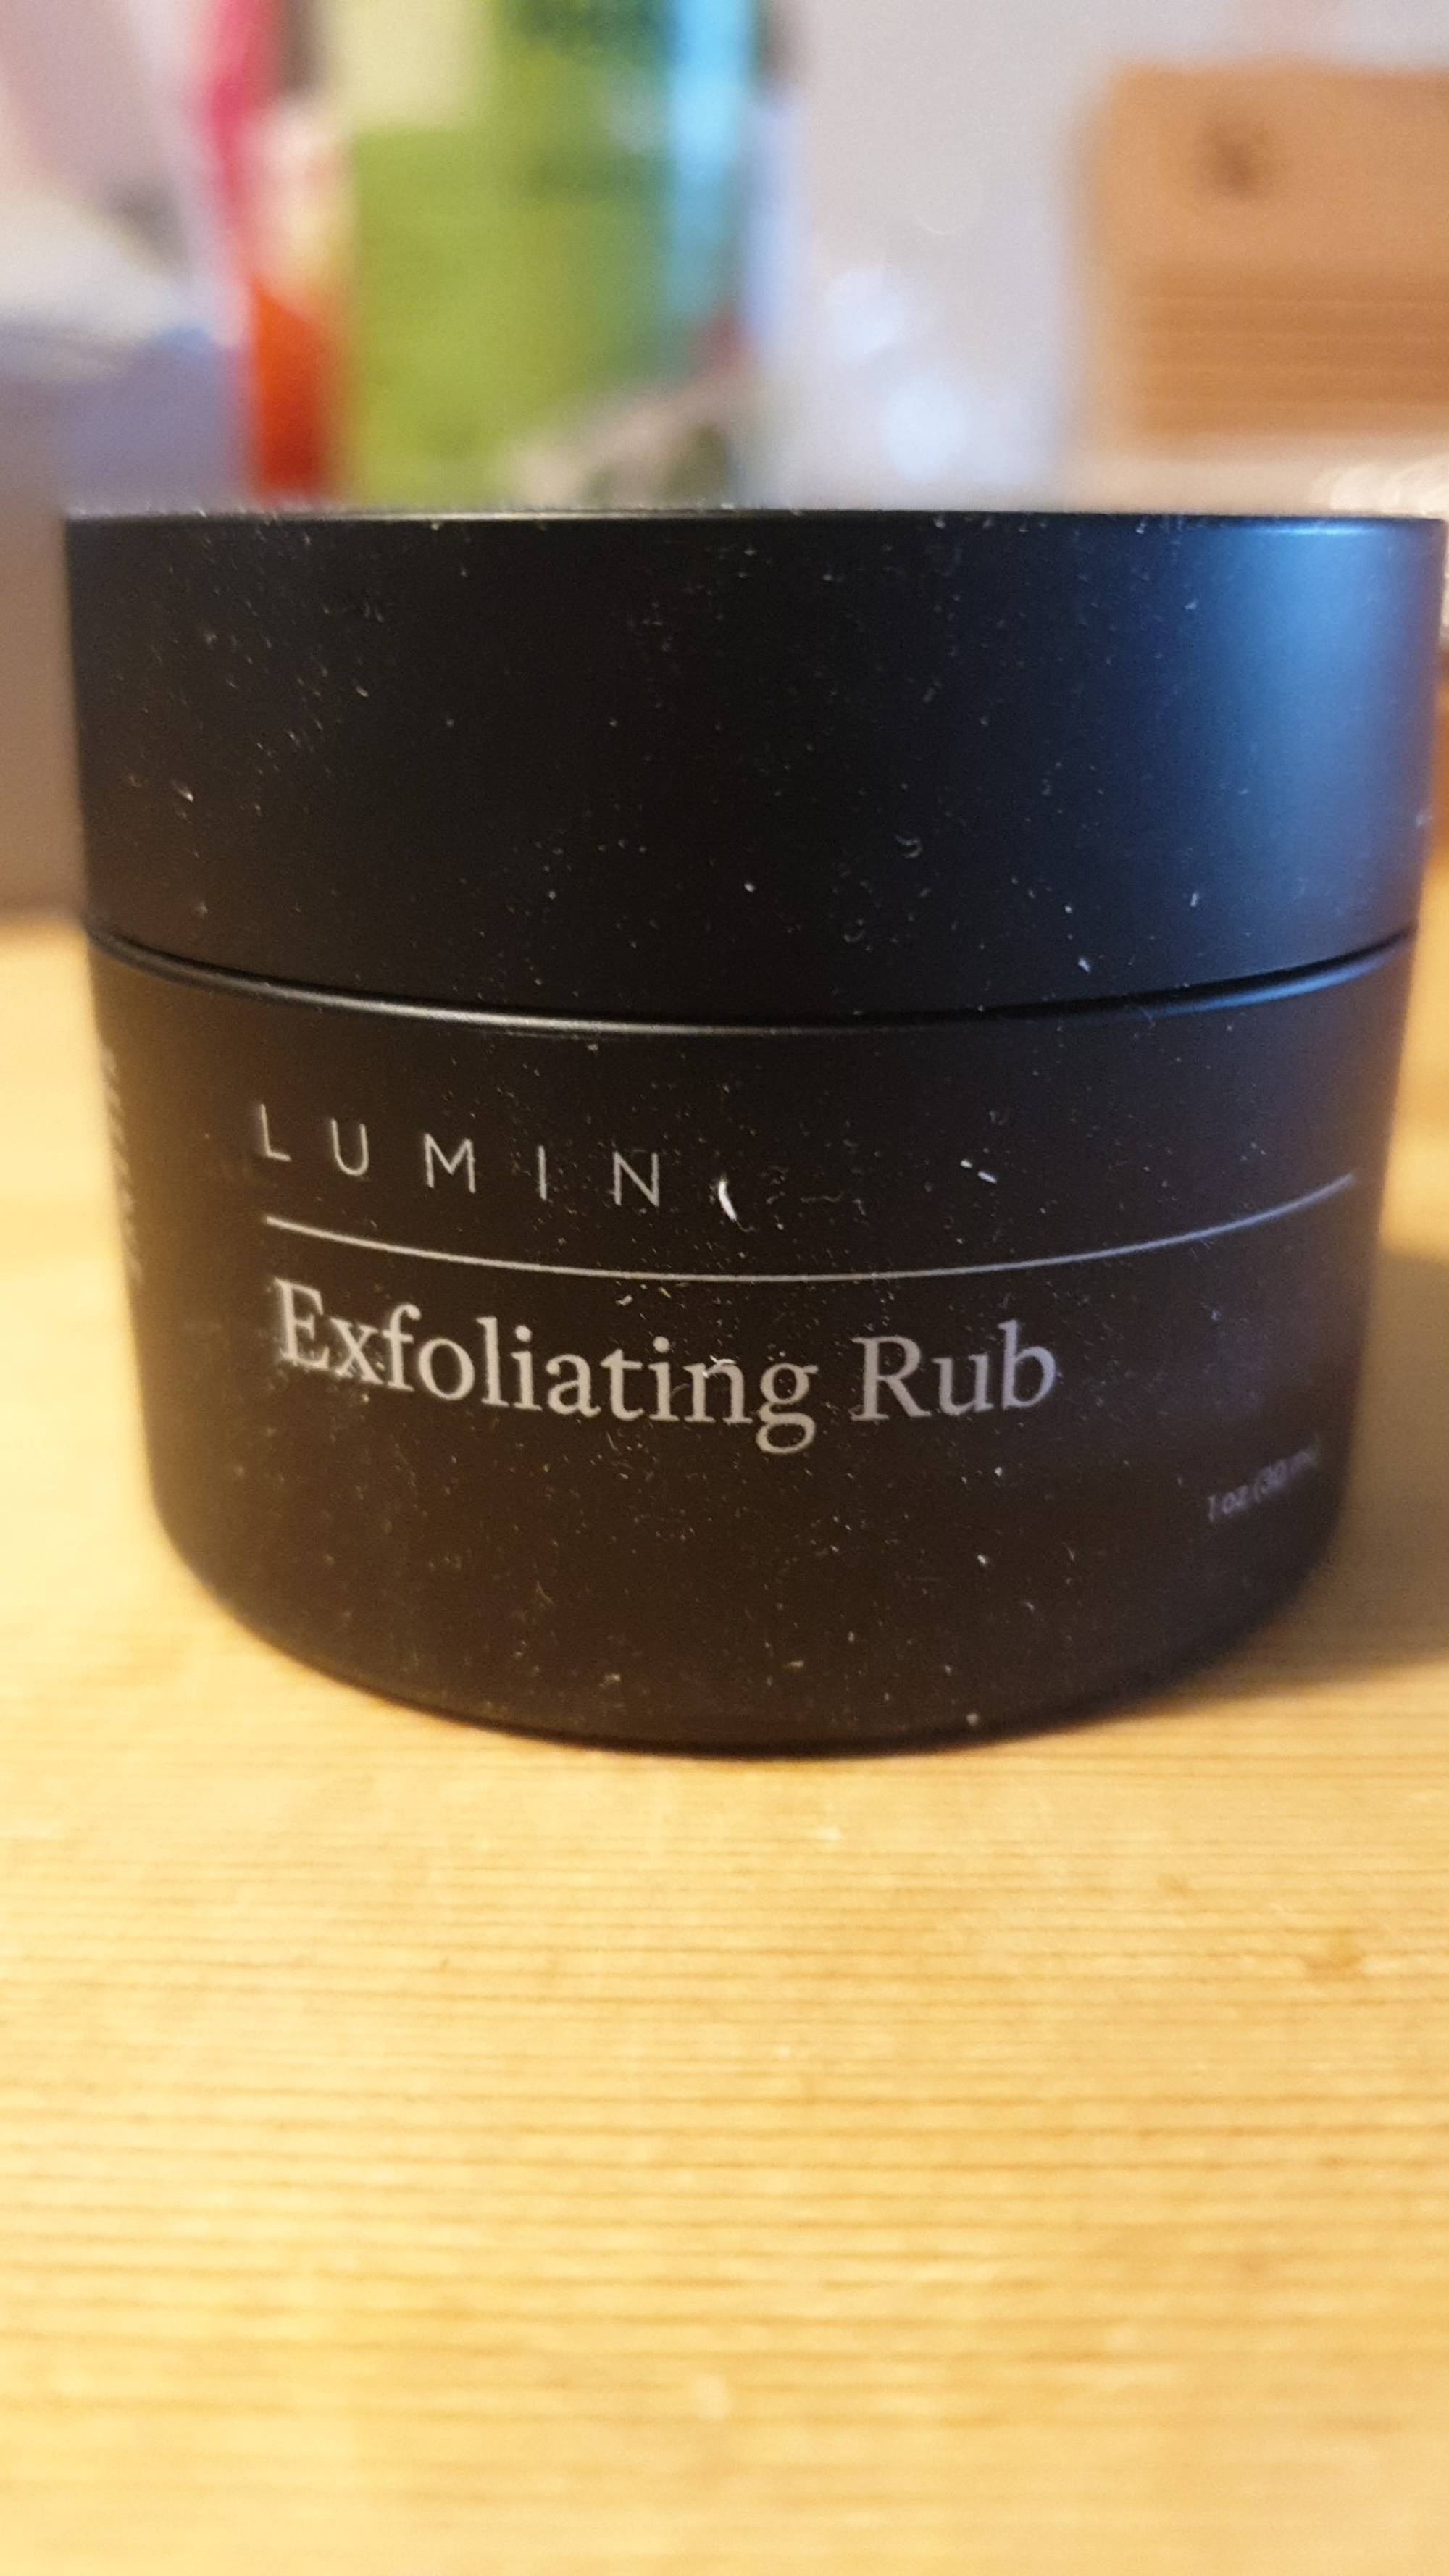 lumin exfoliating rub